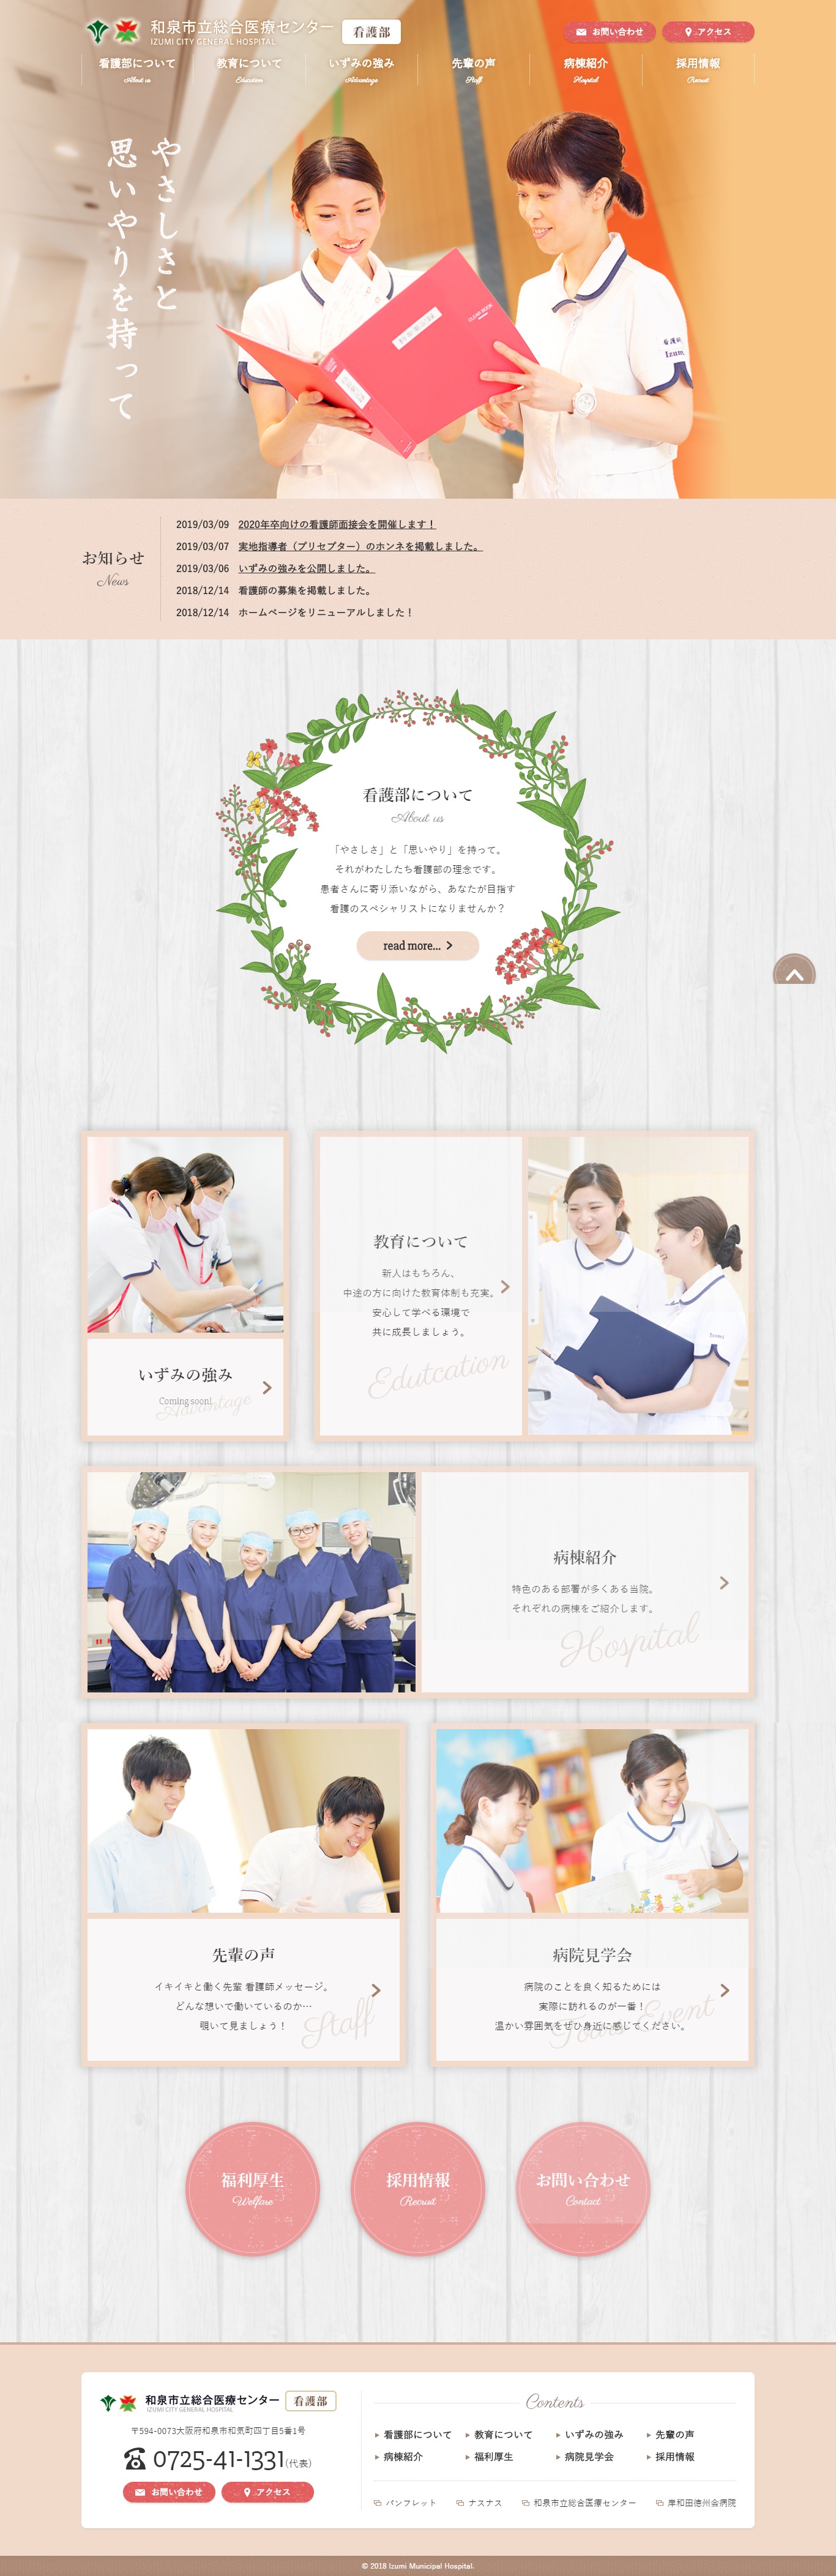 2018年12月作成「和泉市立総合医療センター」看護部サイト